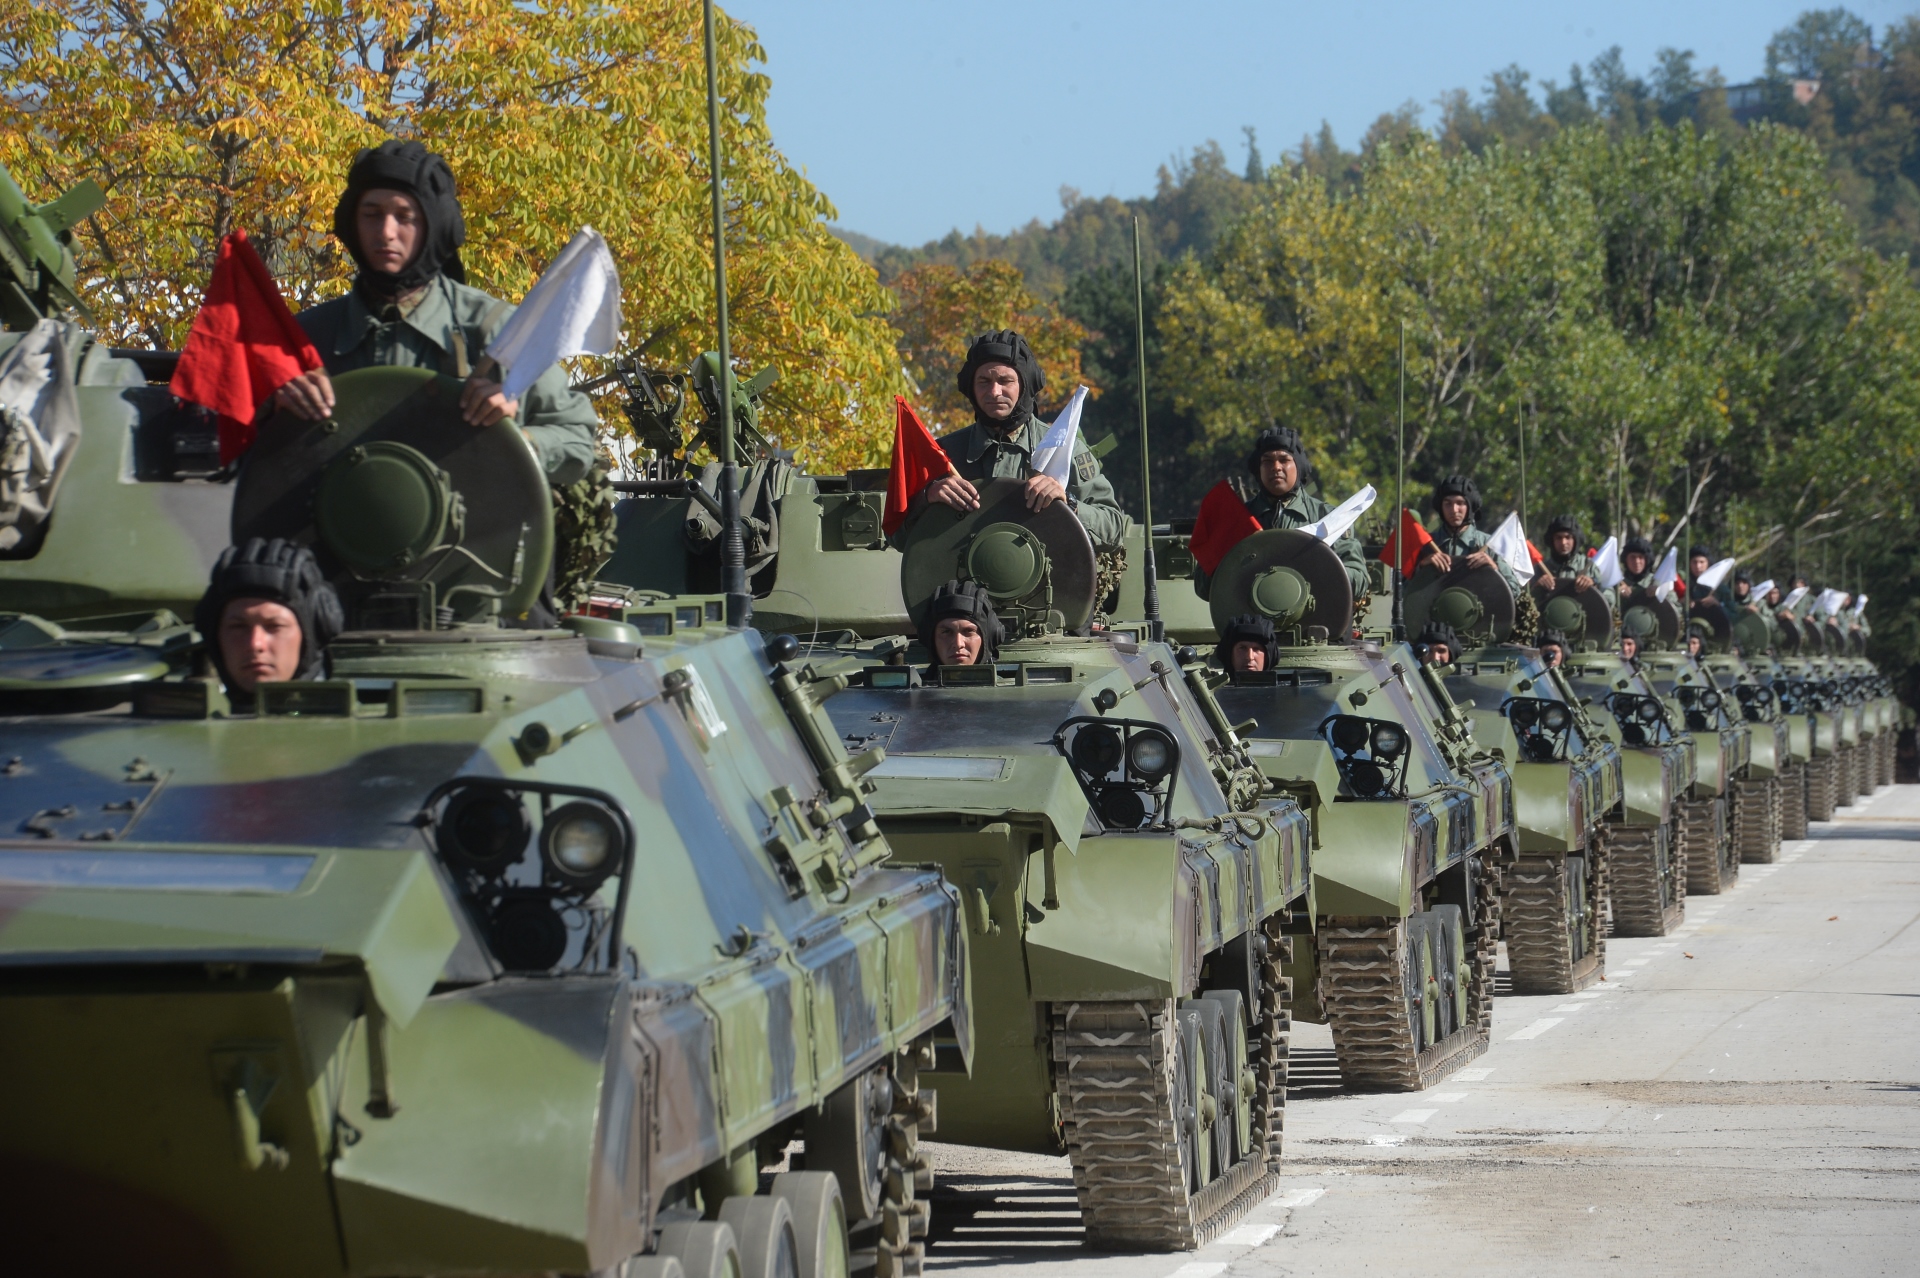 Predsednik Srbije ALeksandar Vucic u Kursumliji koliko je Srbija snaznija toliko je i vojska jaca